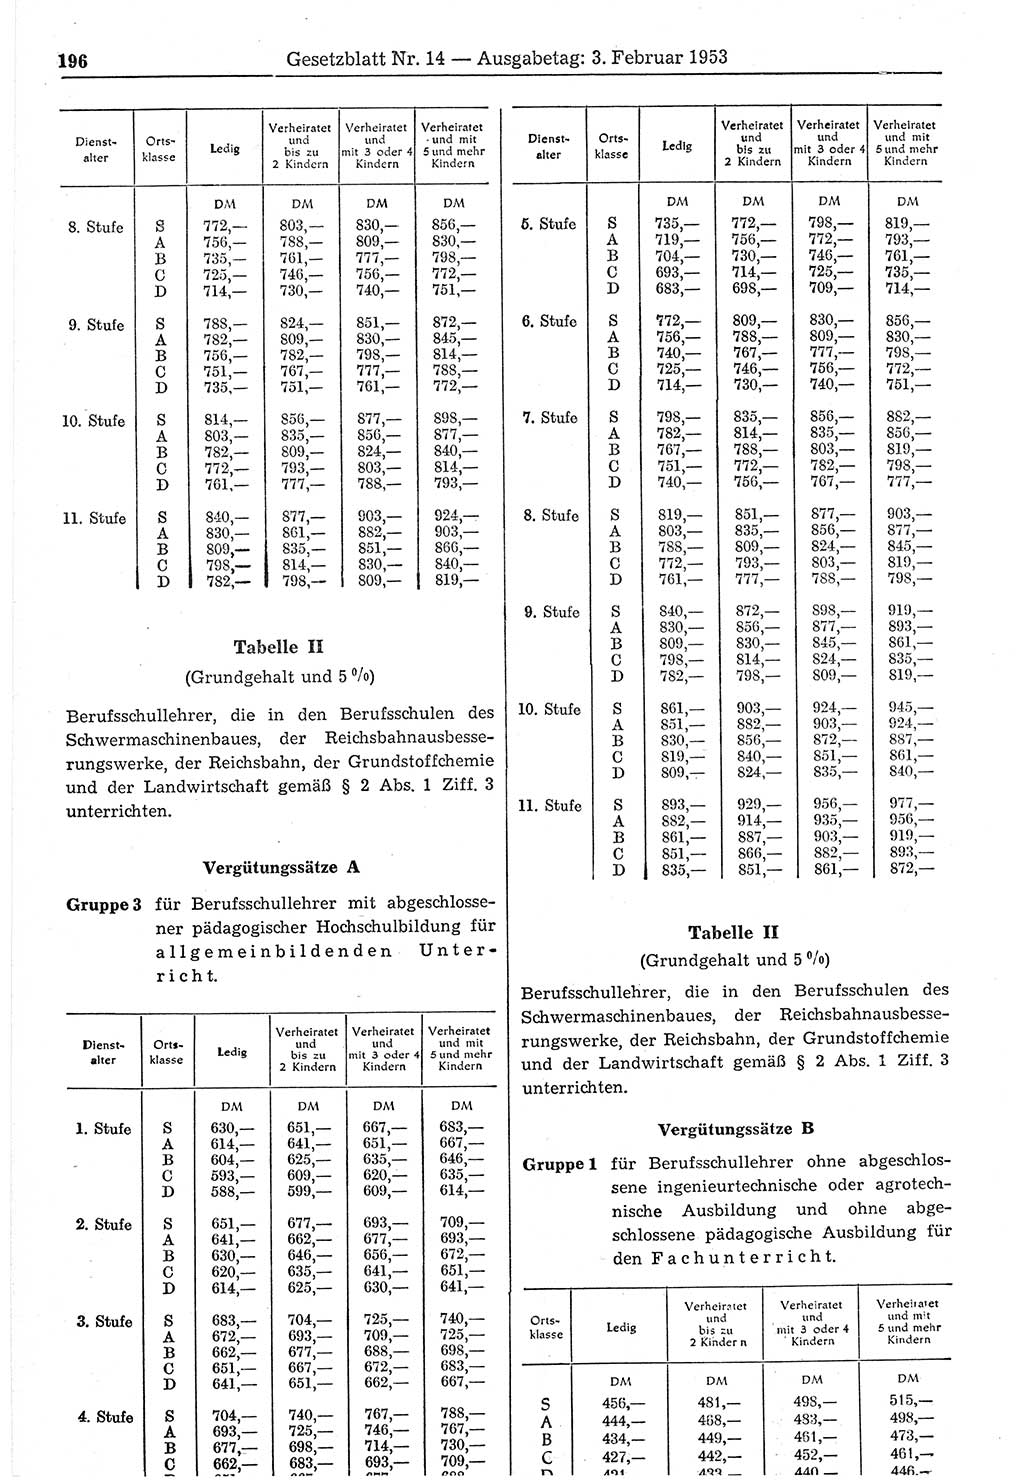 Gesetzblatt (GBl.) der Deutschen Demokratischen Republik (DDR) 1953, Seite 196 (GBl. DDR 1953, S. 196)